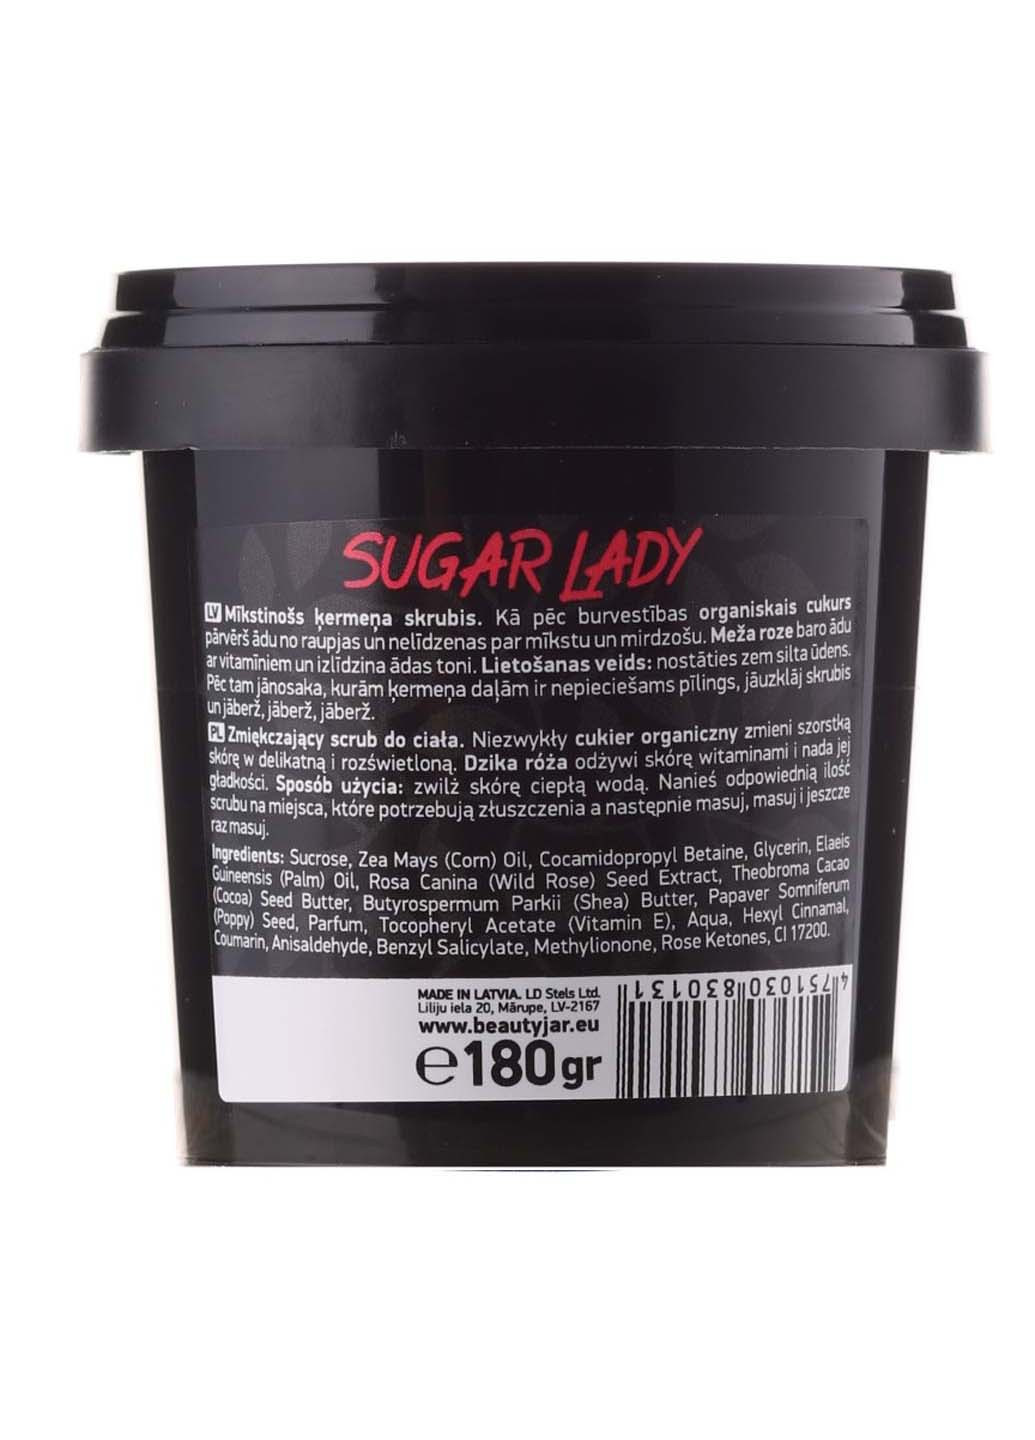 Смягчающий скраб для тела Sugar Lady 200 мл Beauty Jar (264830583)